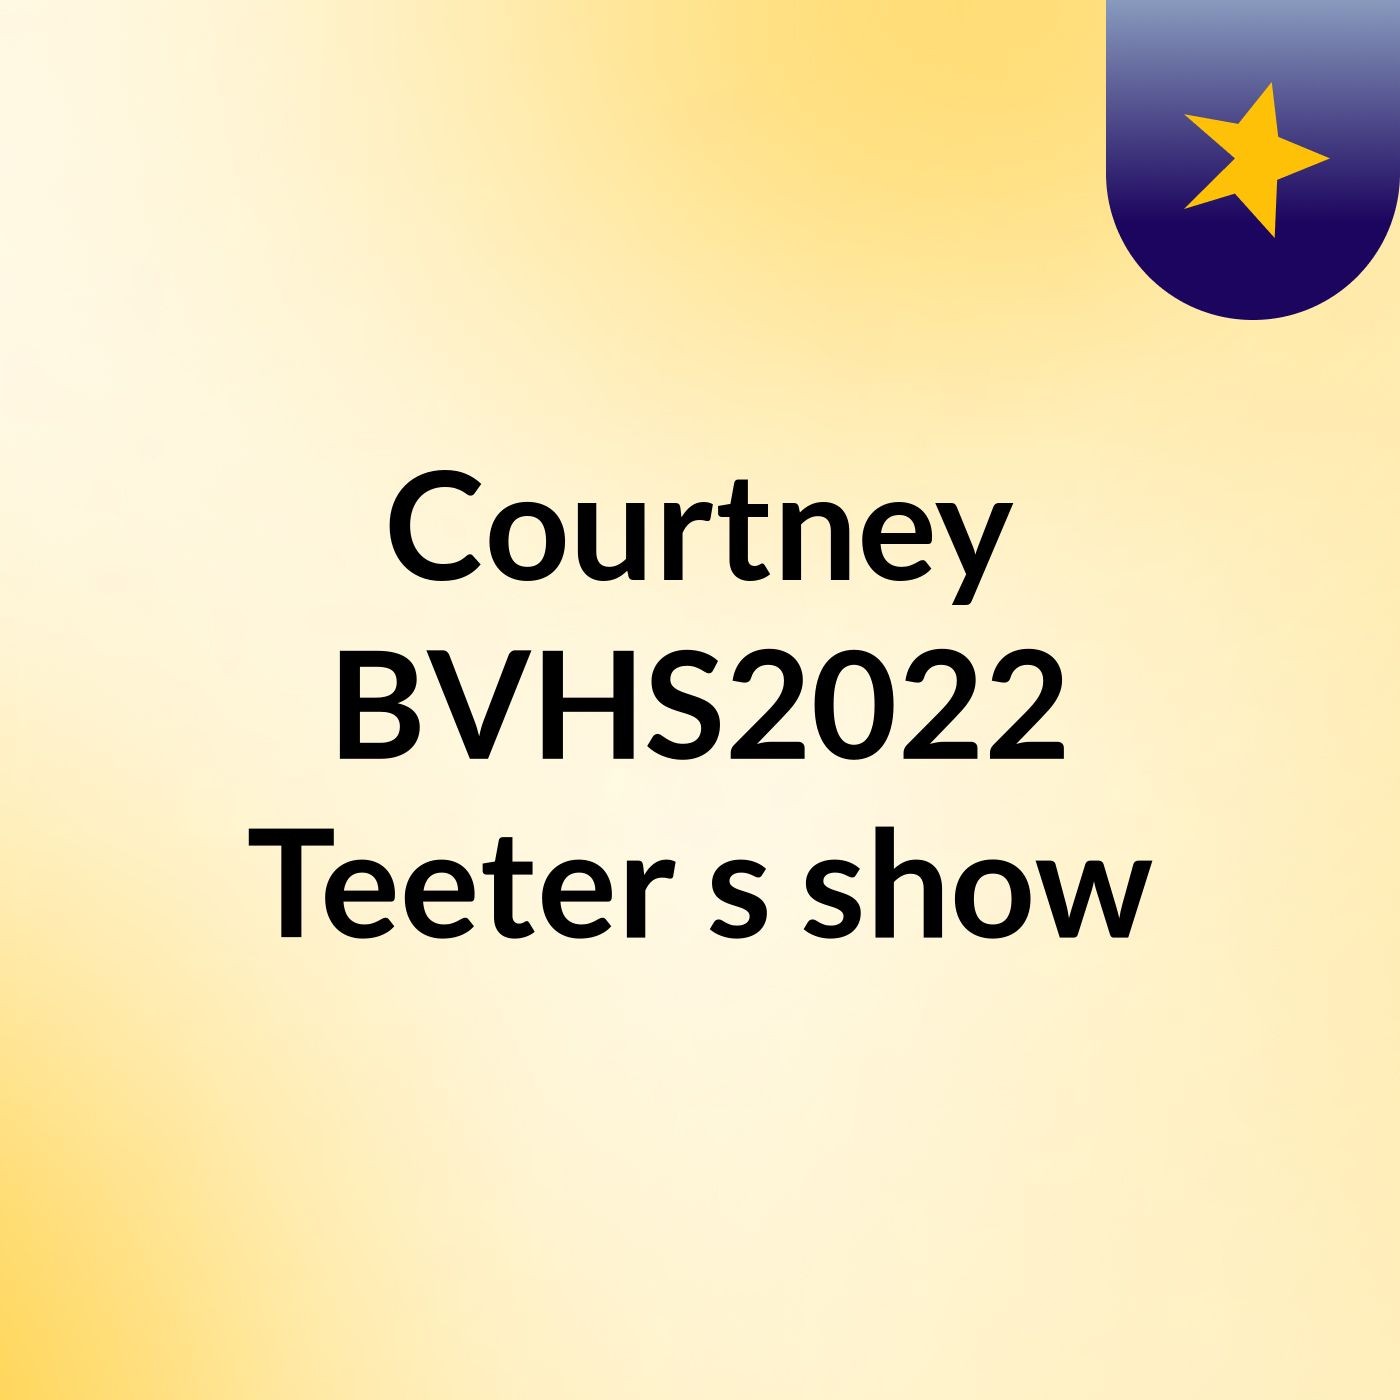 Episode 2 - Courtney BVHS2022 Teeter's show